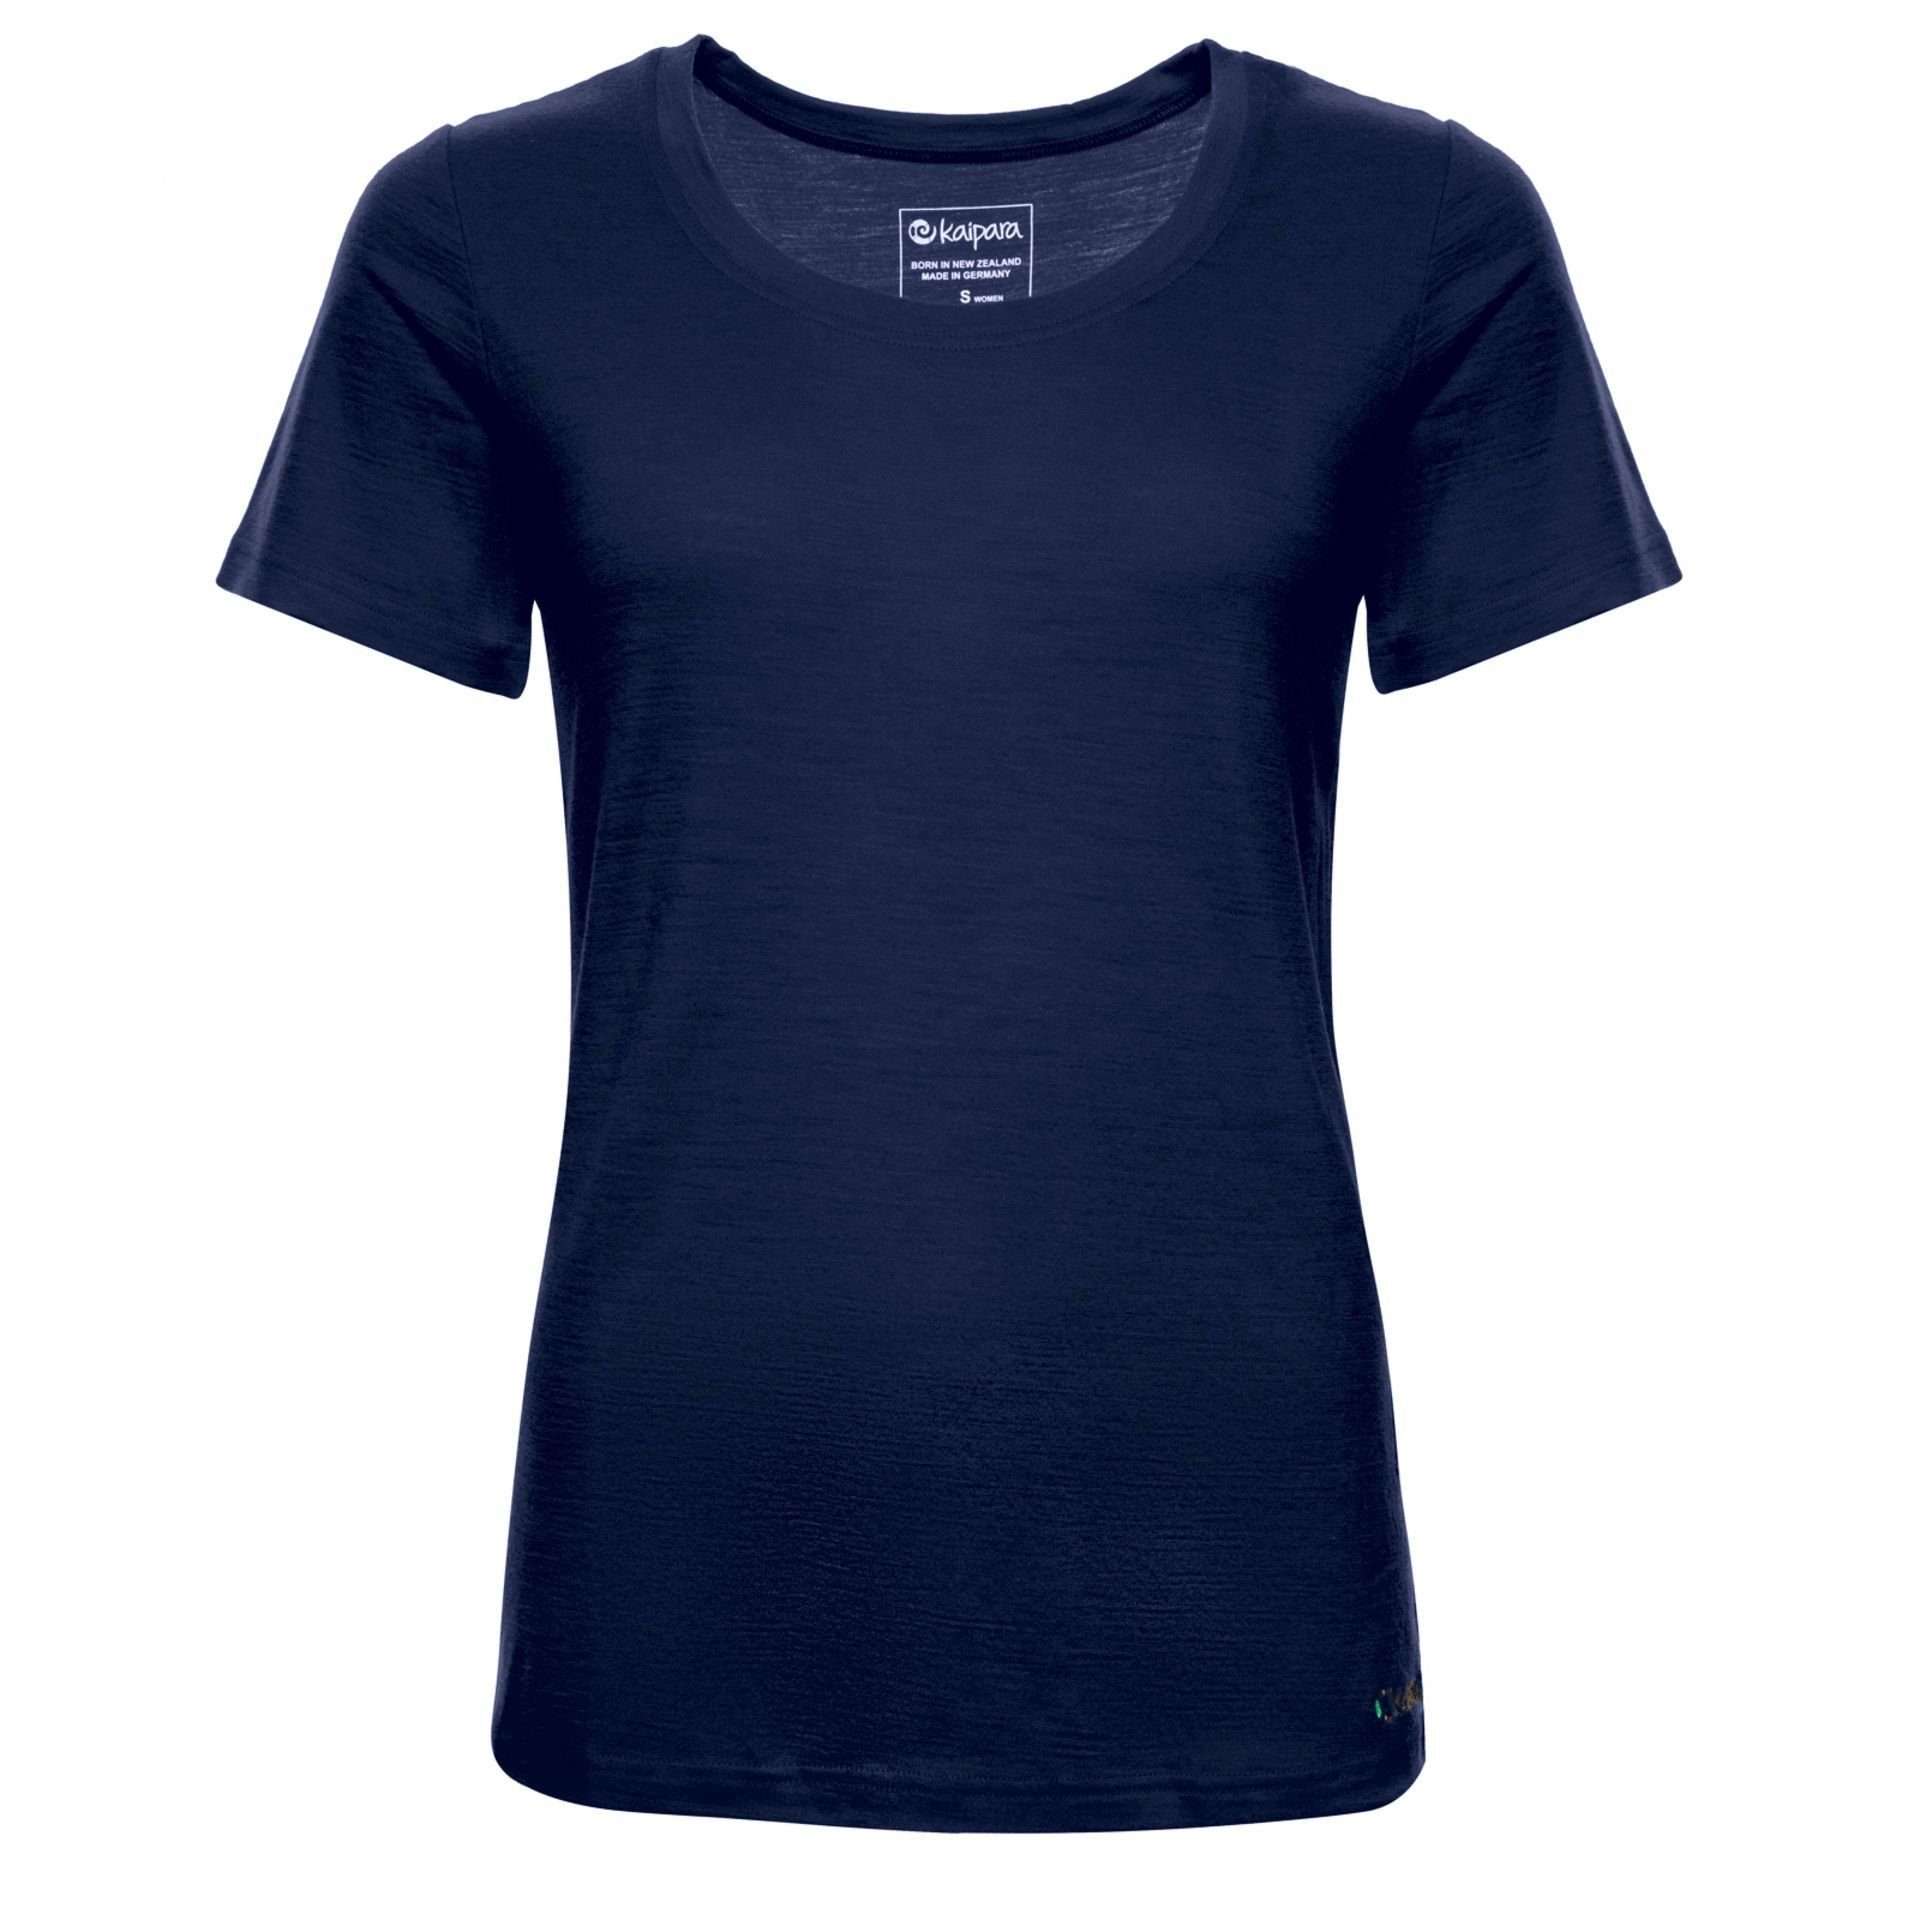 (1-St) Merinowolle warm Merino Kaipara Sportswear 200g Kurzarm Damen-Unterhemd in Made Germany Unterhemd Blau Slimfit - Merino reiner aus